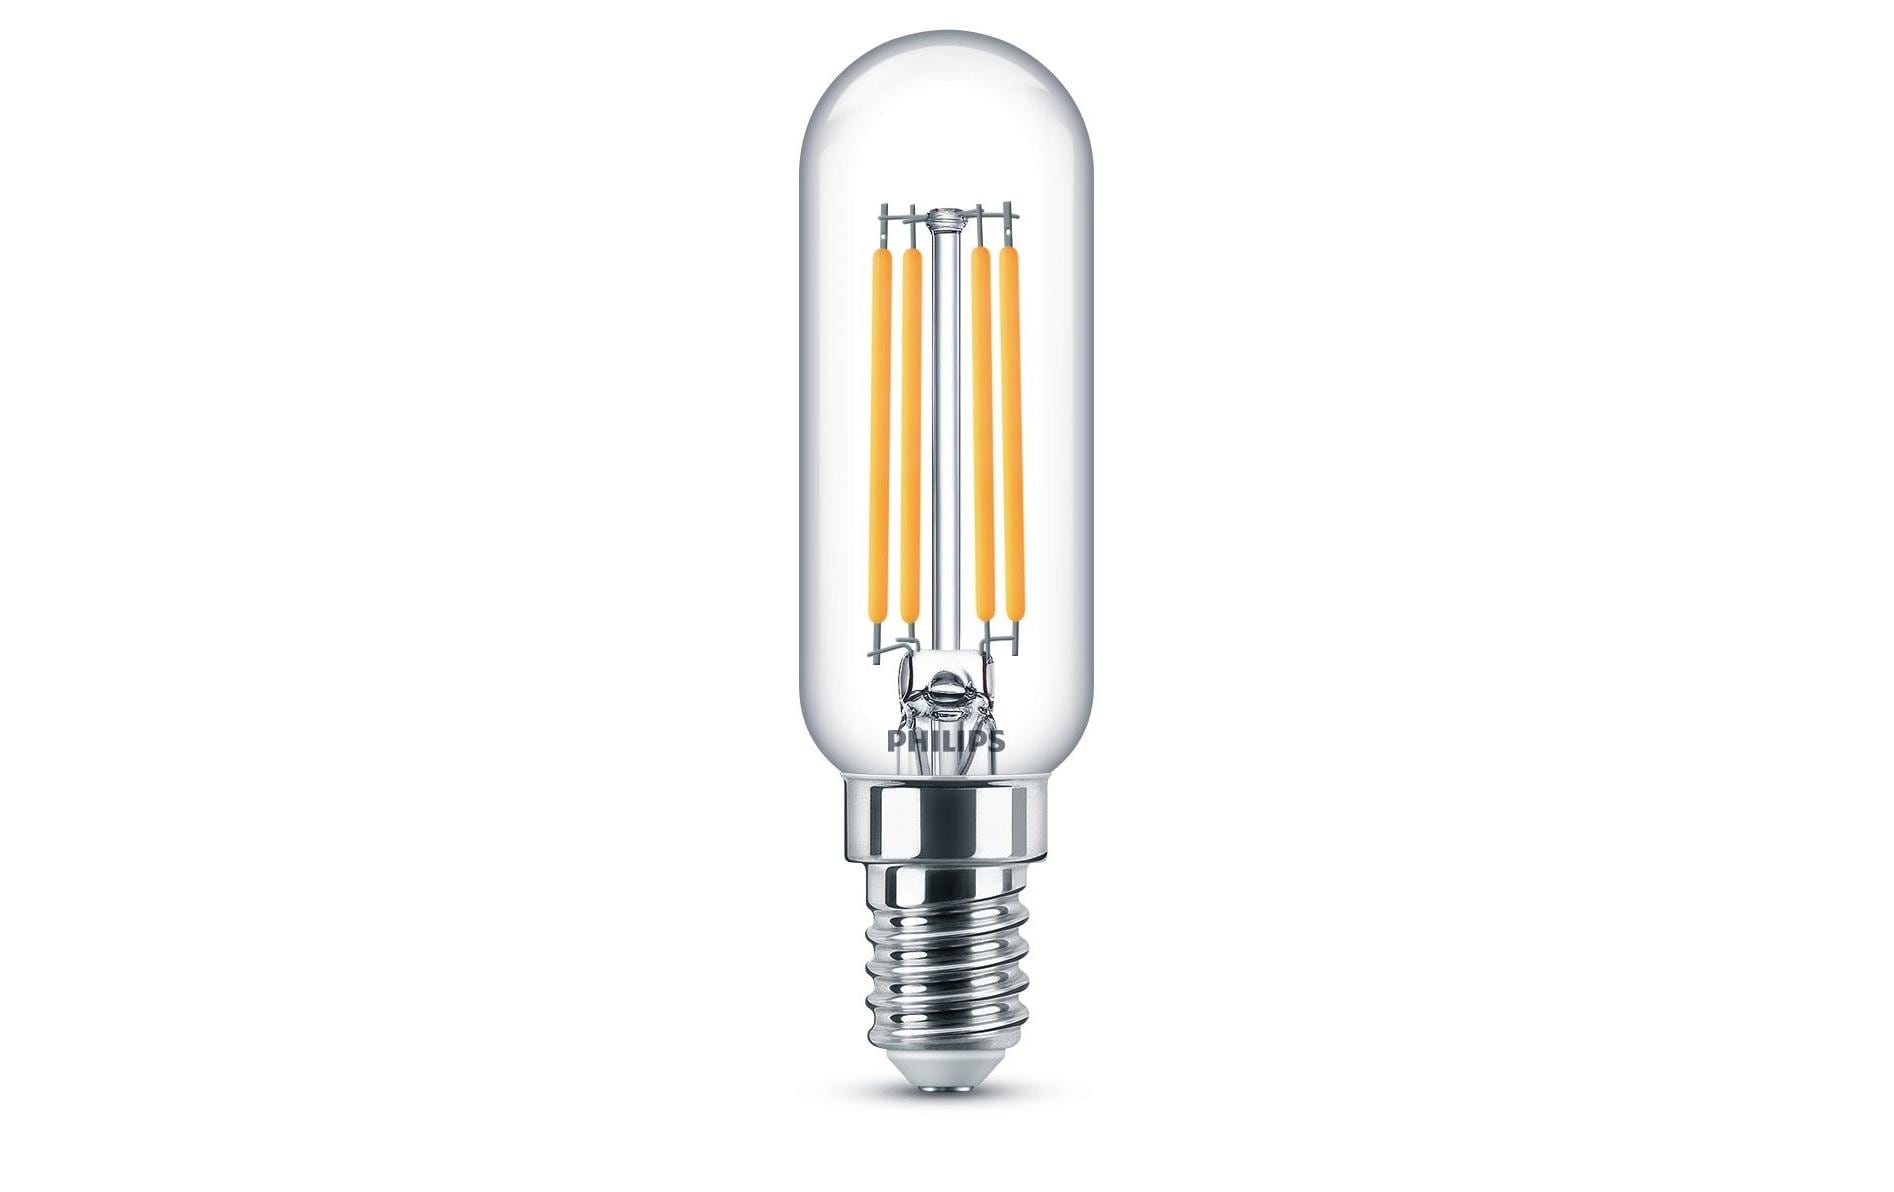 Philips LED T25L Stablampe, E14, Klar, Kaltweiss, nondim, 40W Ersatz